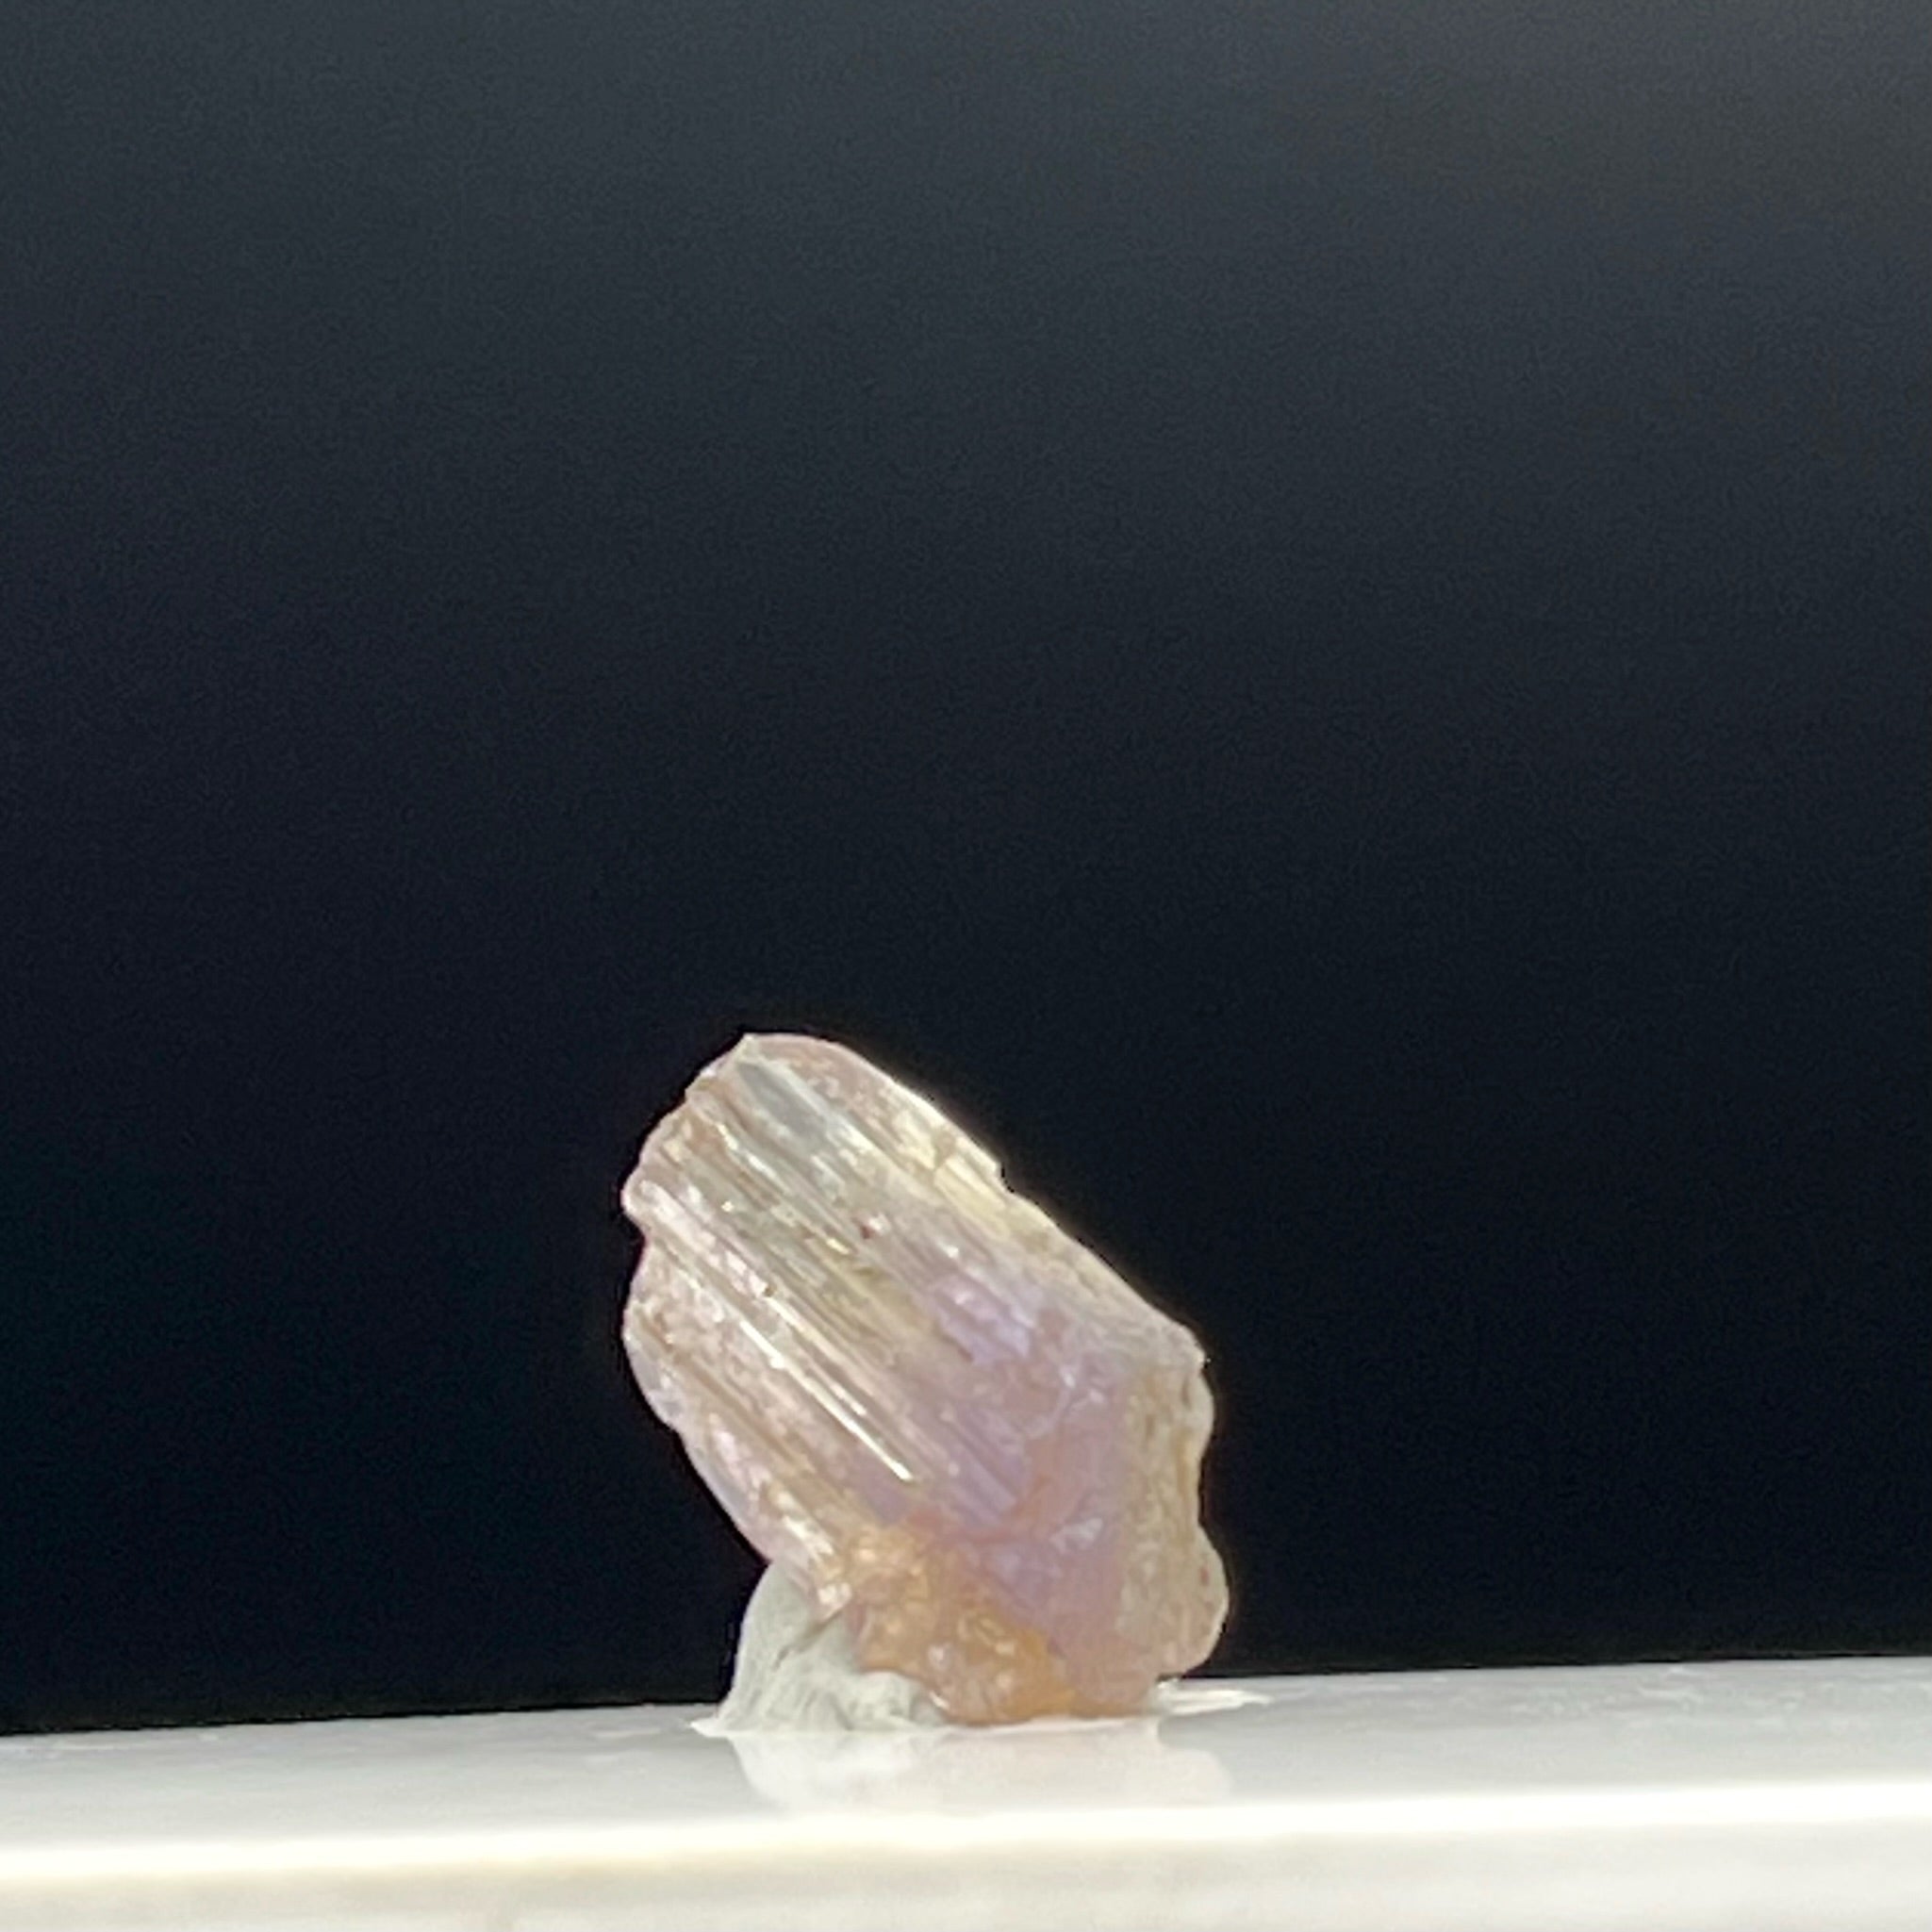 Real Tanzanite Crystal - 088